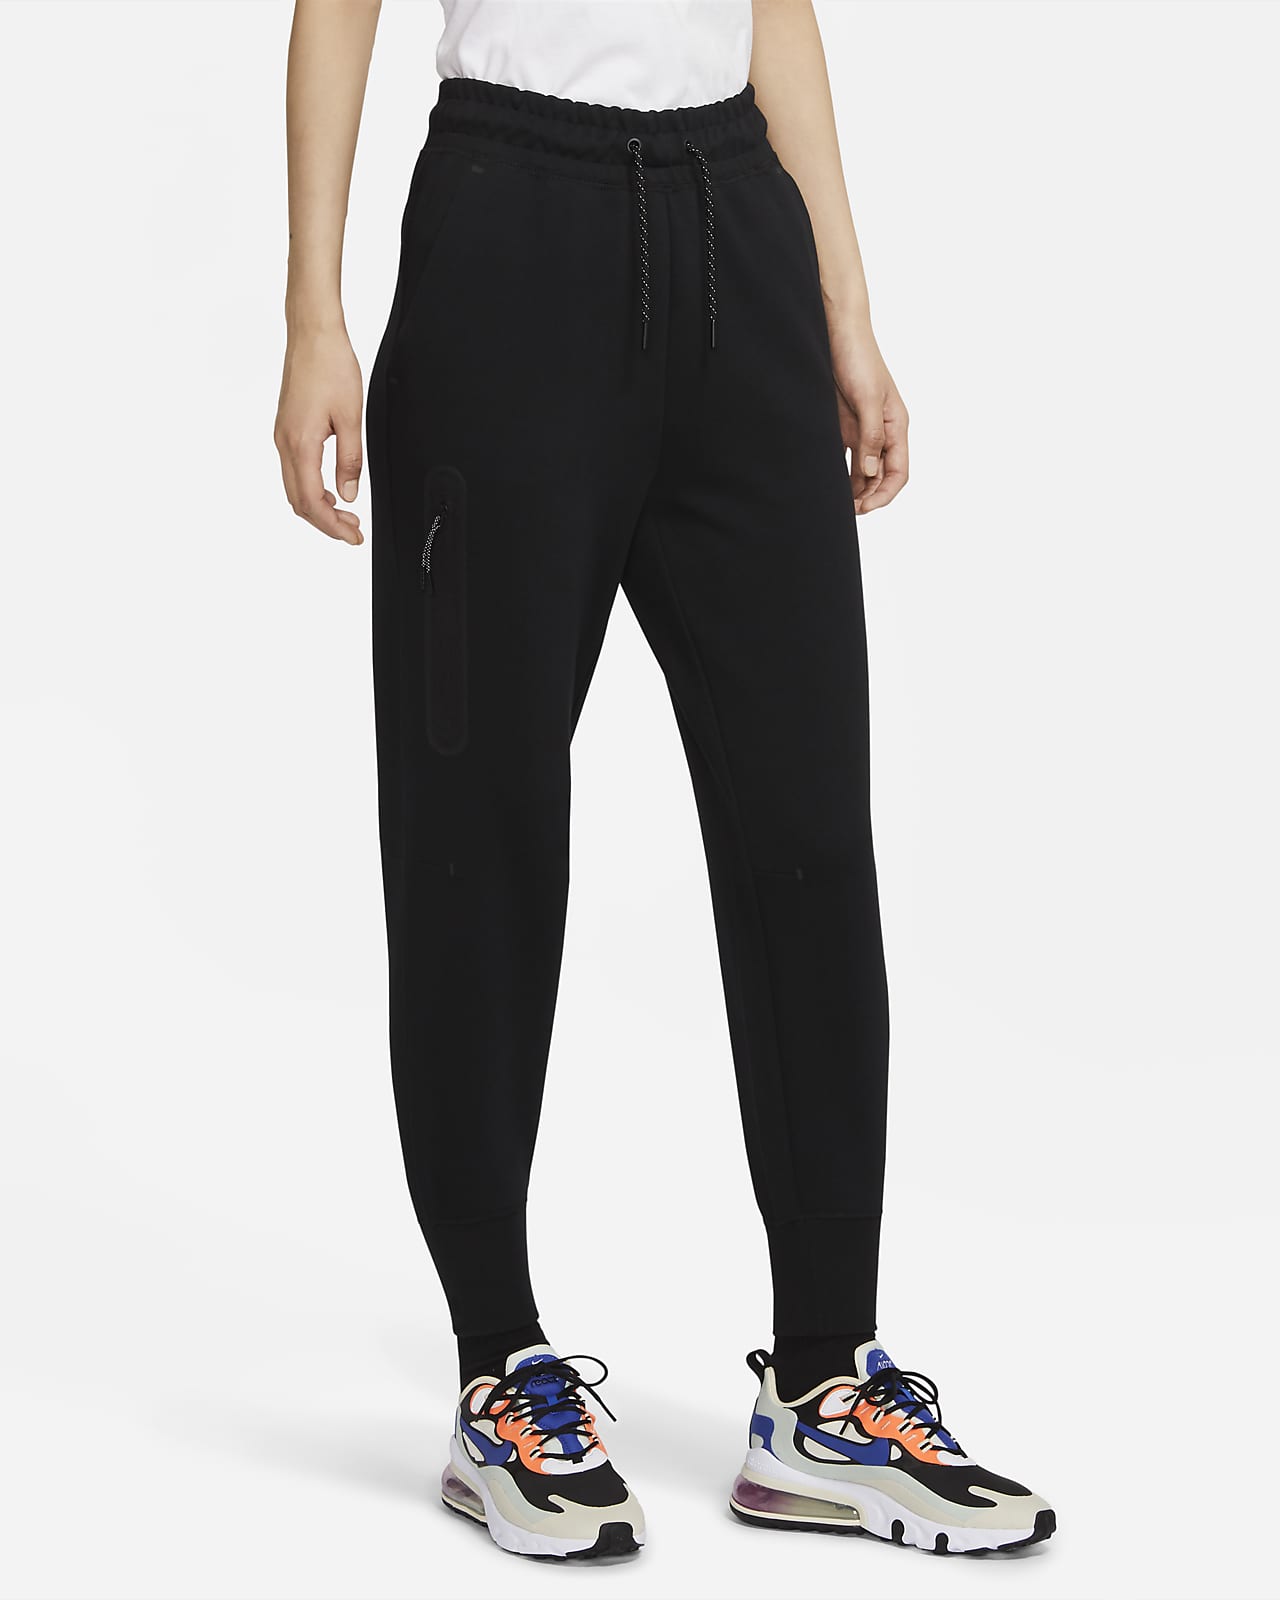 Nike Sportswear Tech Fleece 女款運動褲